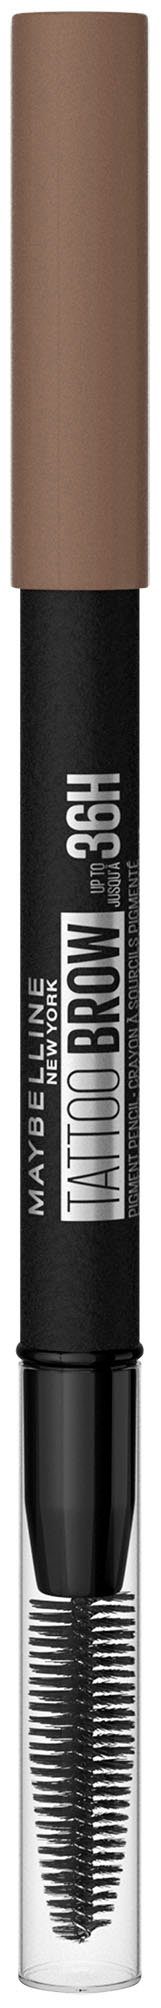 2 YORK Blonde Augen-Make-Up mit 36H, Brow Tattoo Augenbrauen-Stift MAYBELLINE NEW Formel, Bürste, wasserfeste